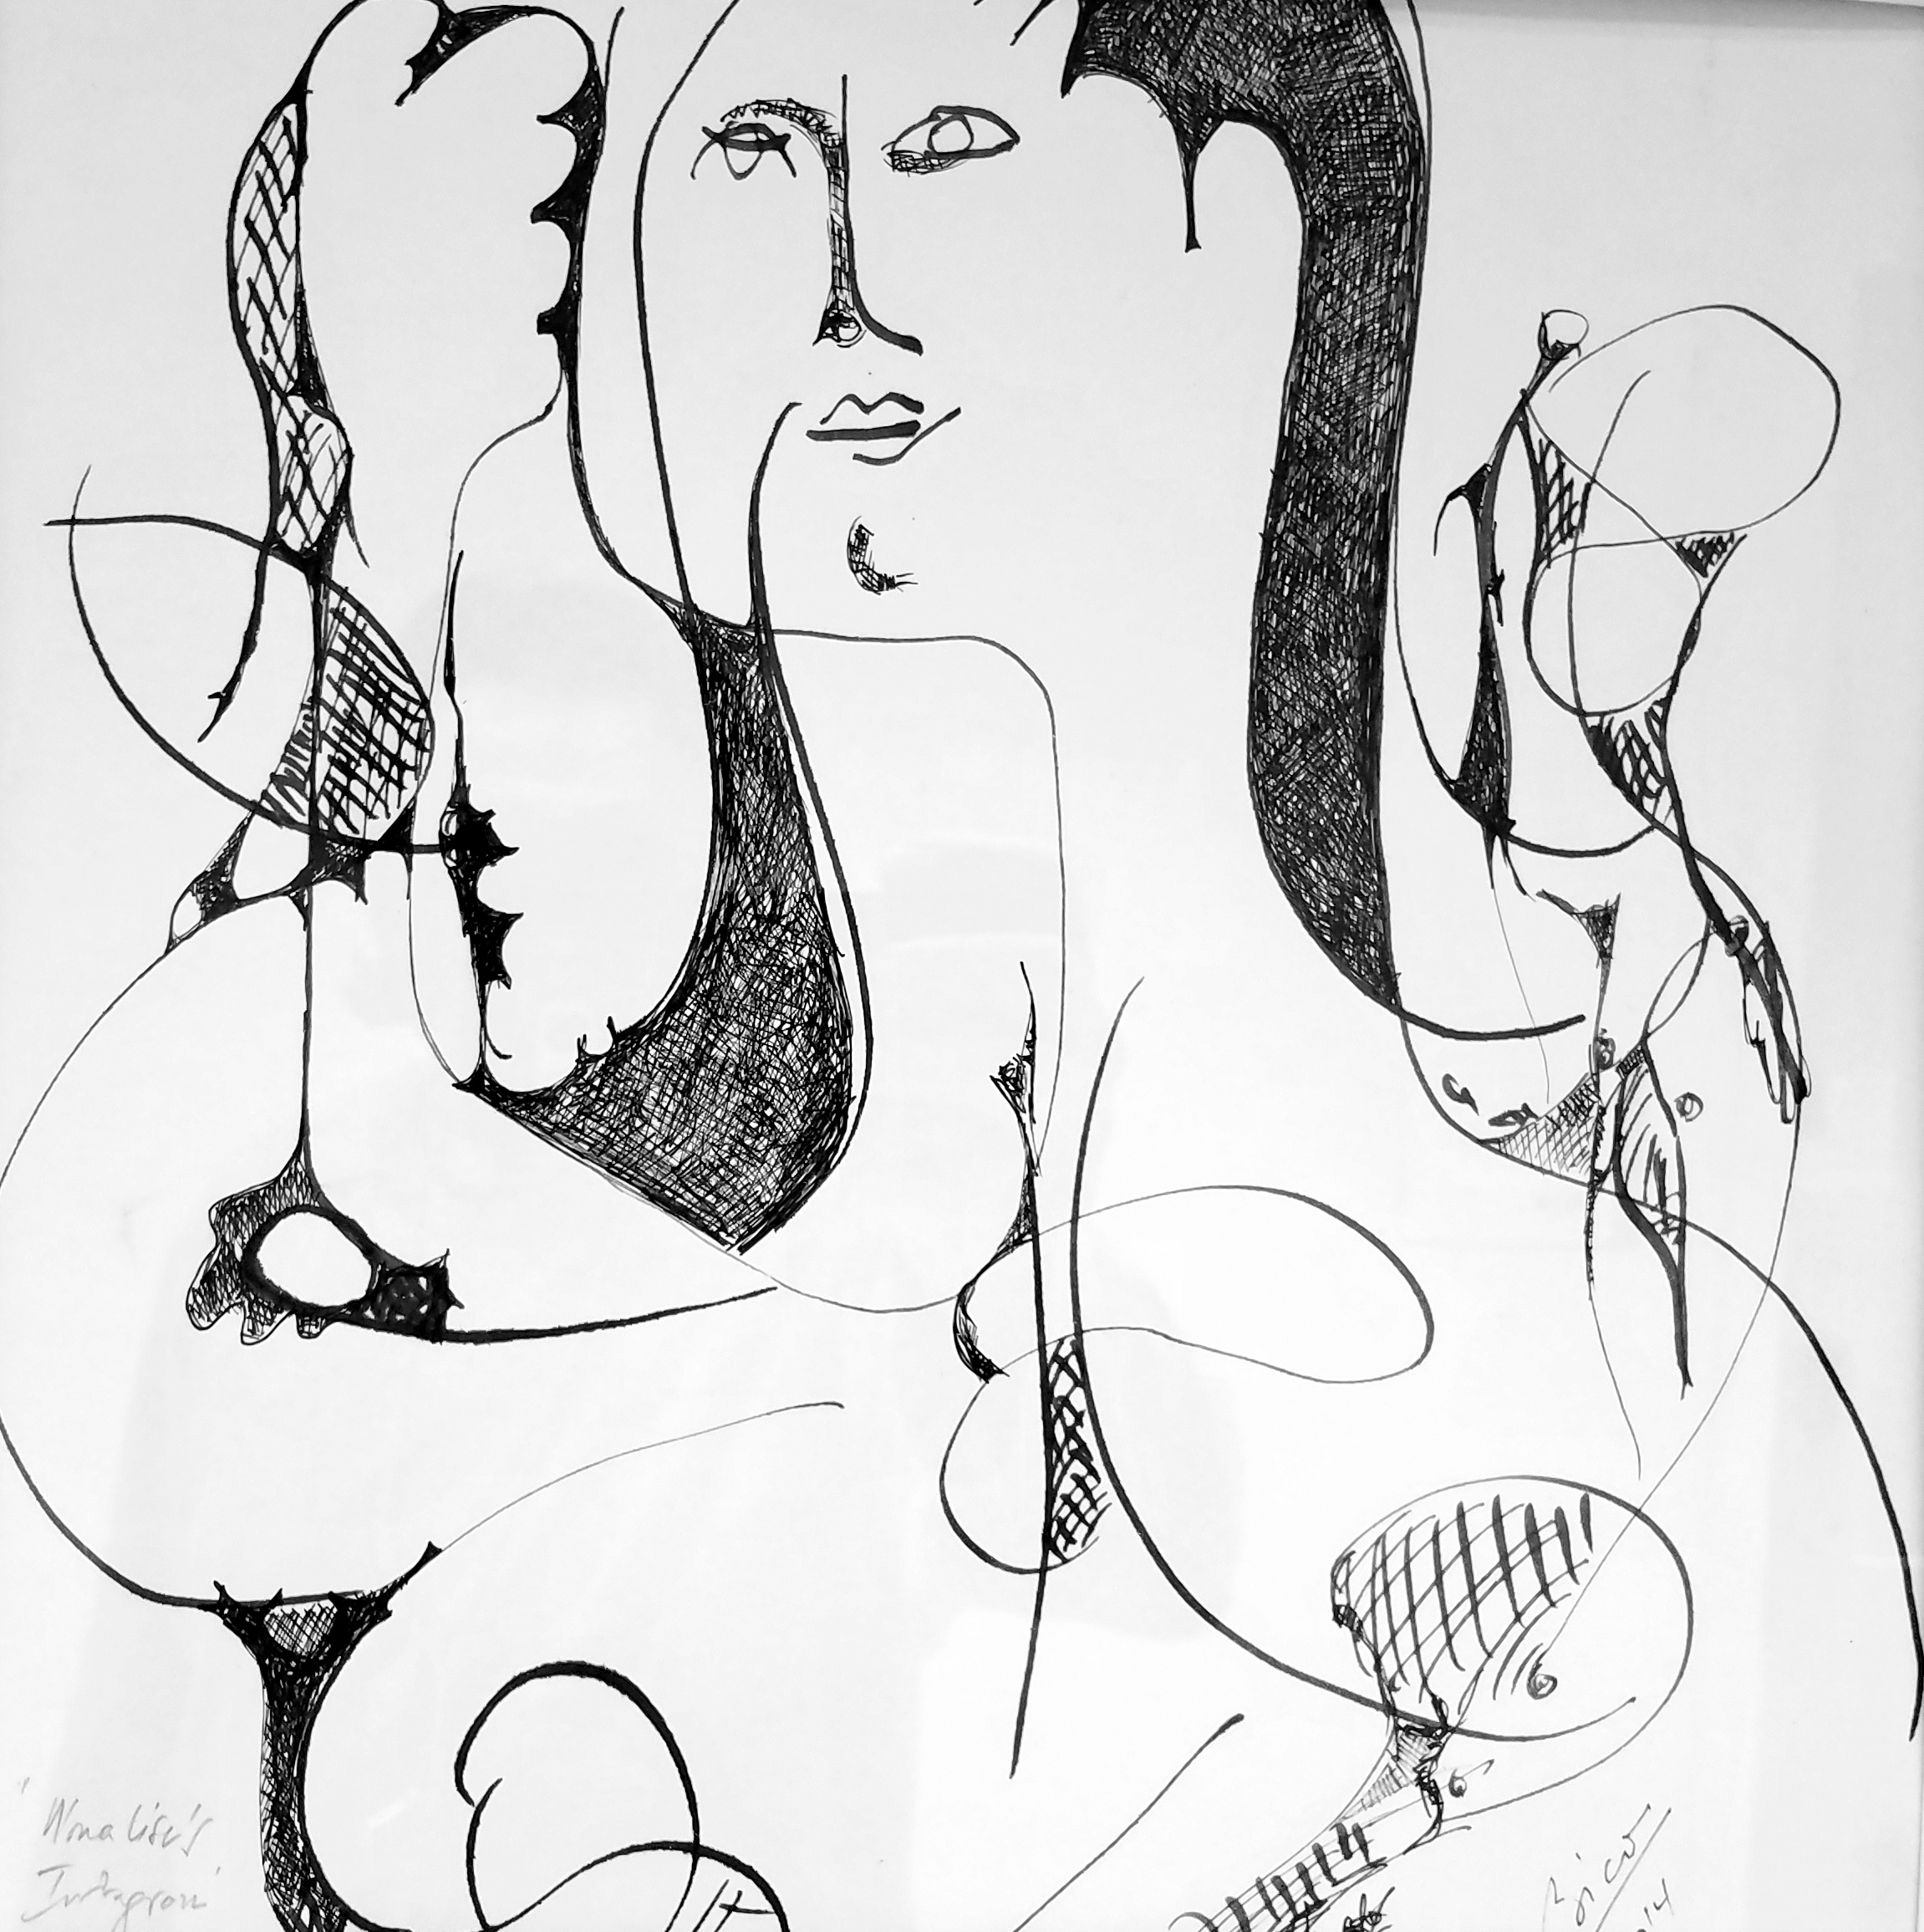  Sorin Bica,&nbsp; Mona Lisa's Instagram , ink on paper, 17" x 17" 